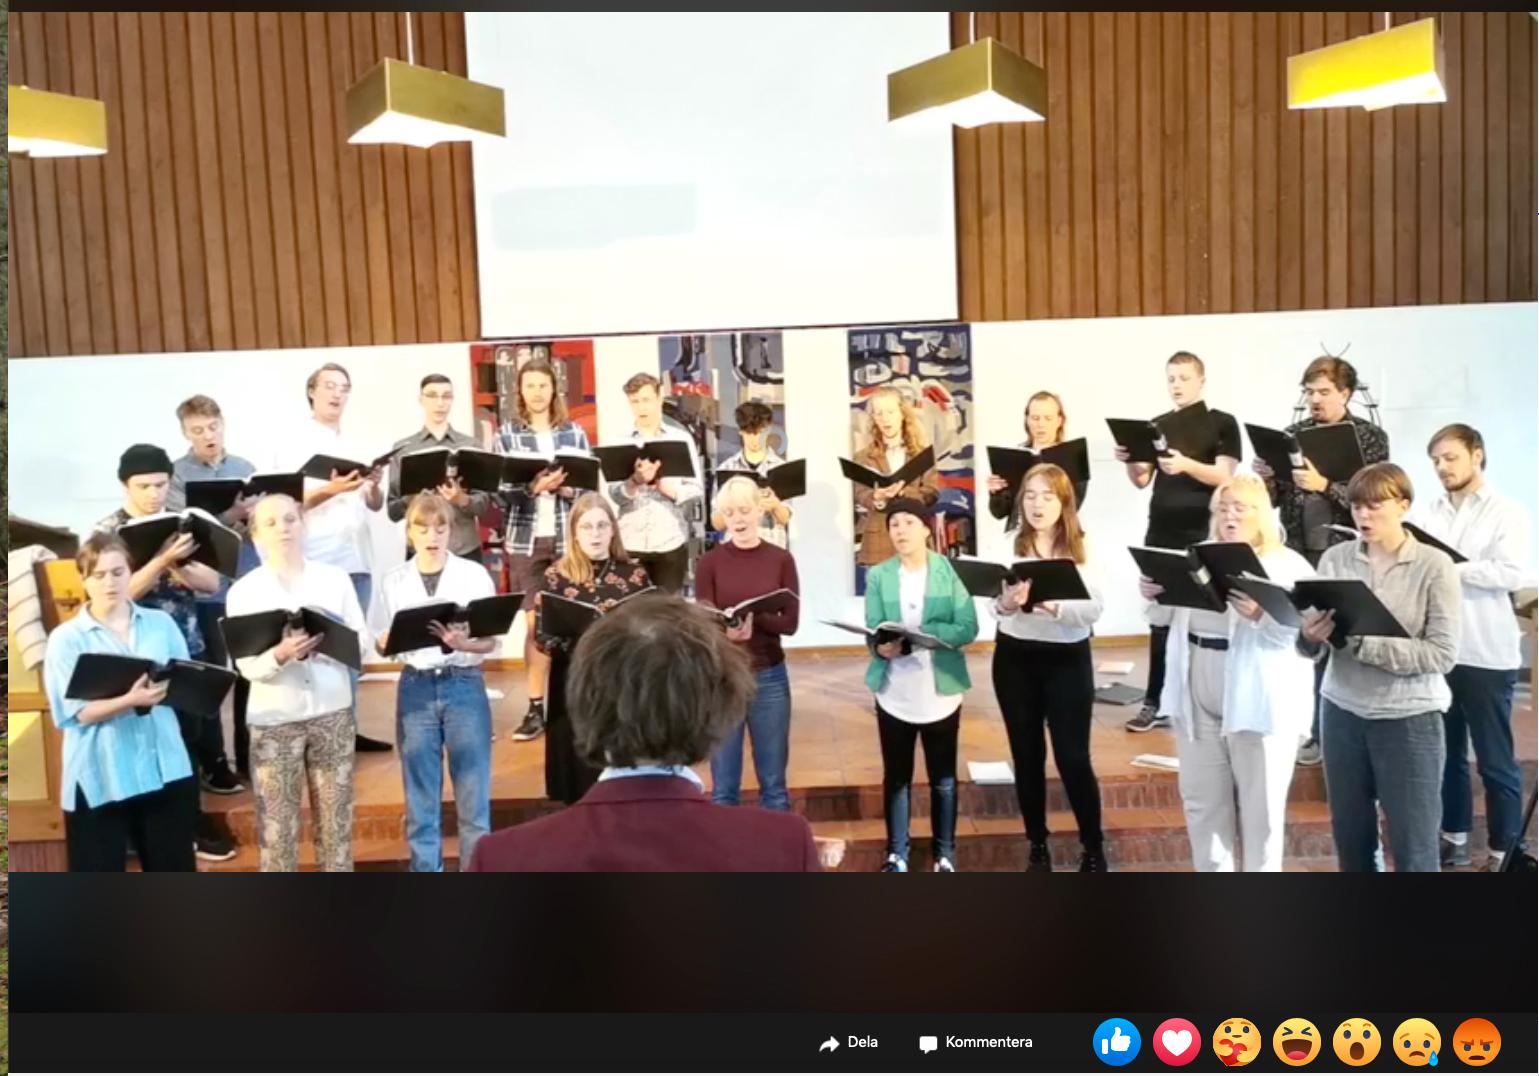 Sjöviks musiklinje fick streama sin traditionella vårkonsert i torsdags via Facebook. På grund av covid-19